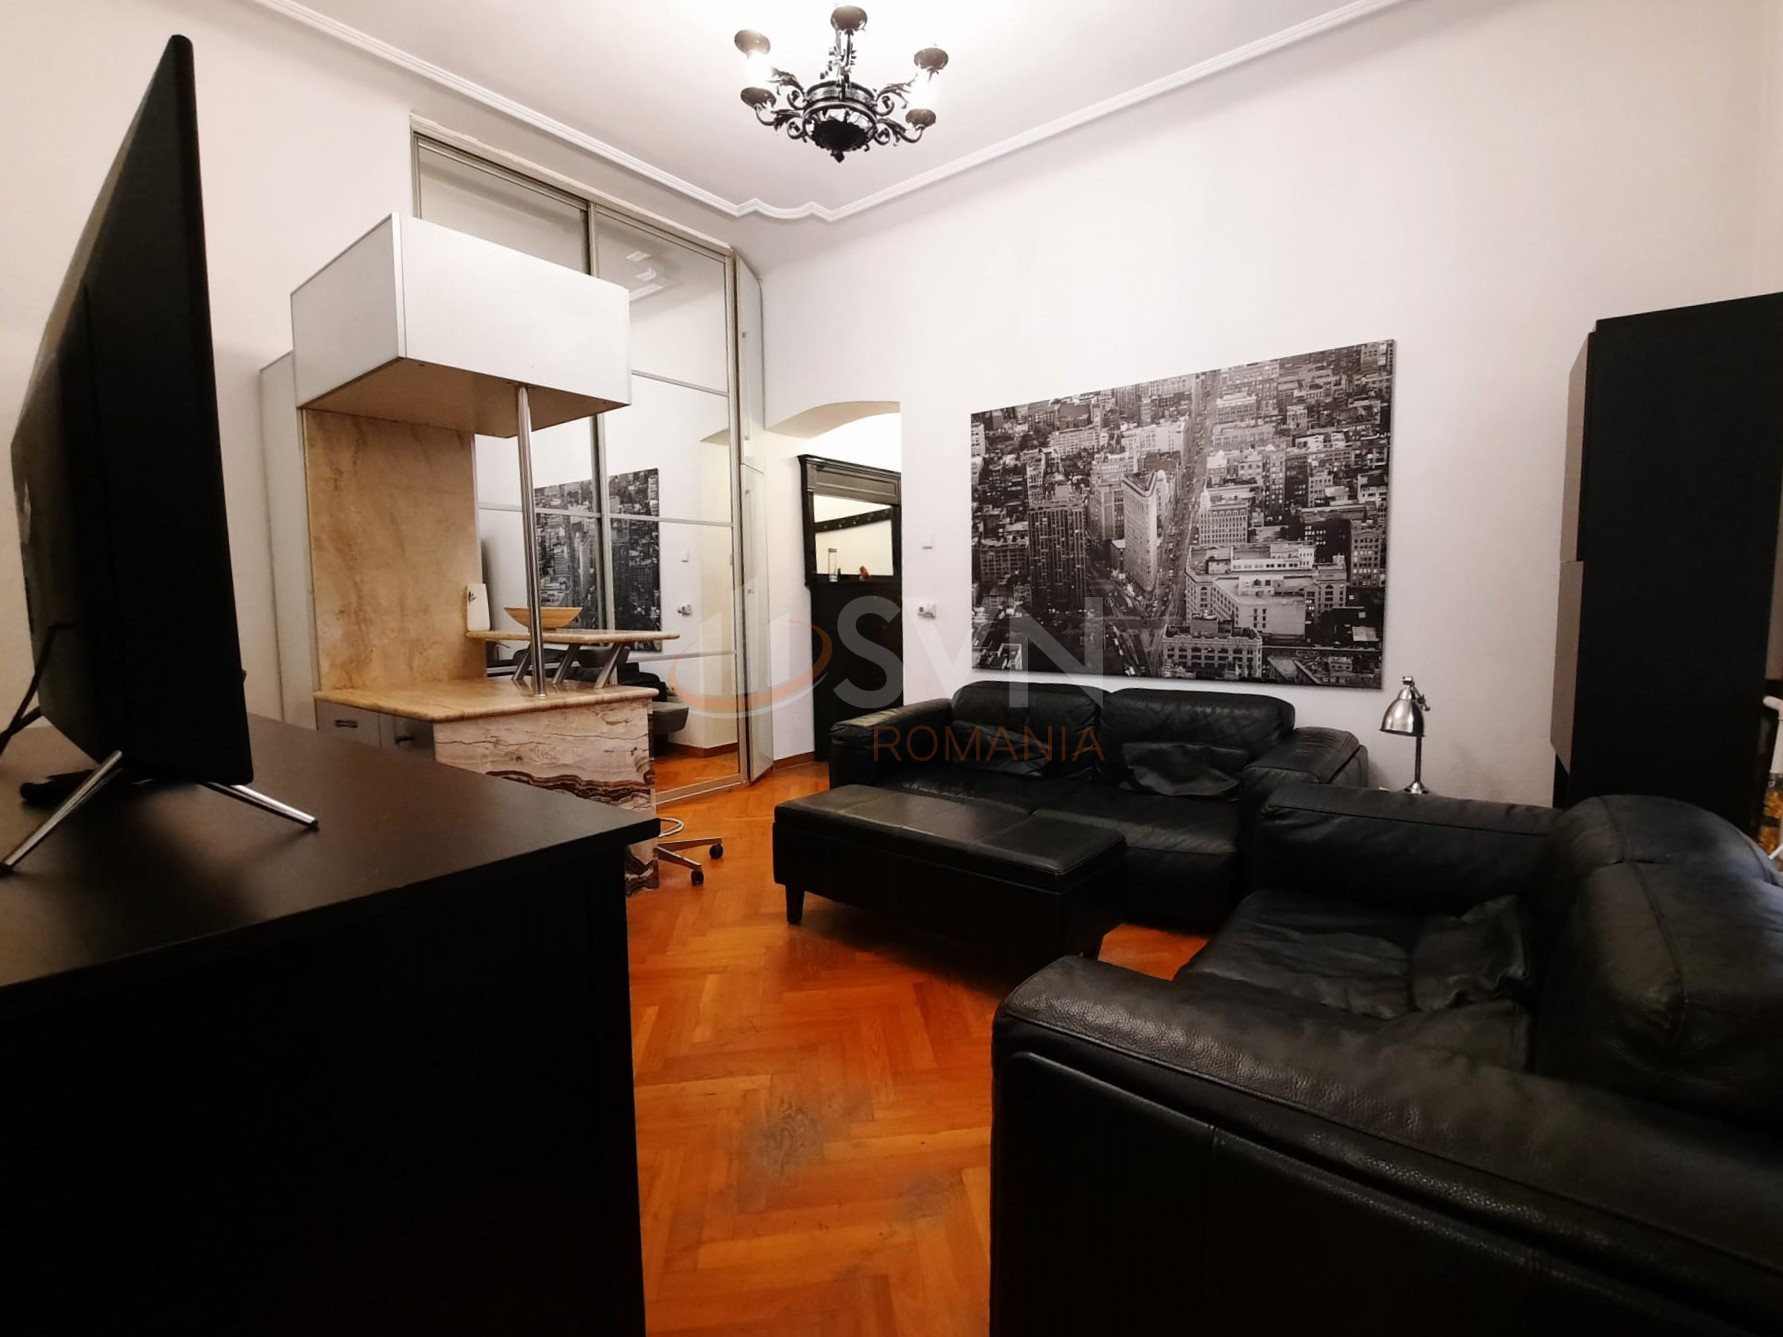 Apartament, 2 camere Bucuresti/Calea Victoriei